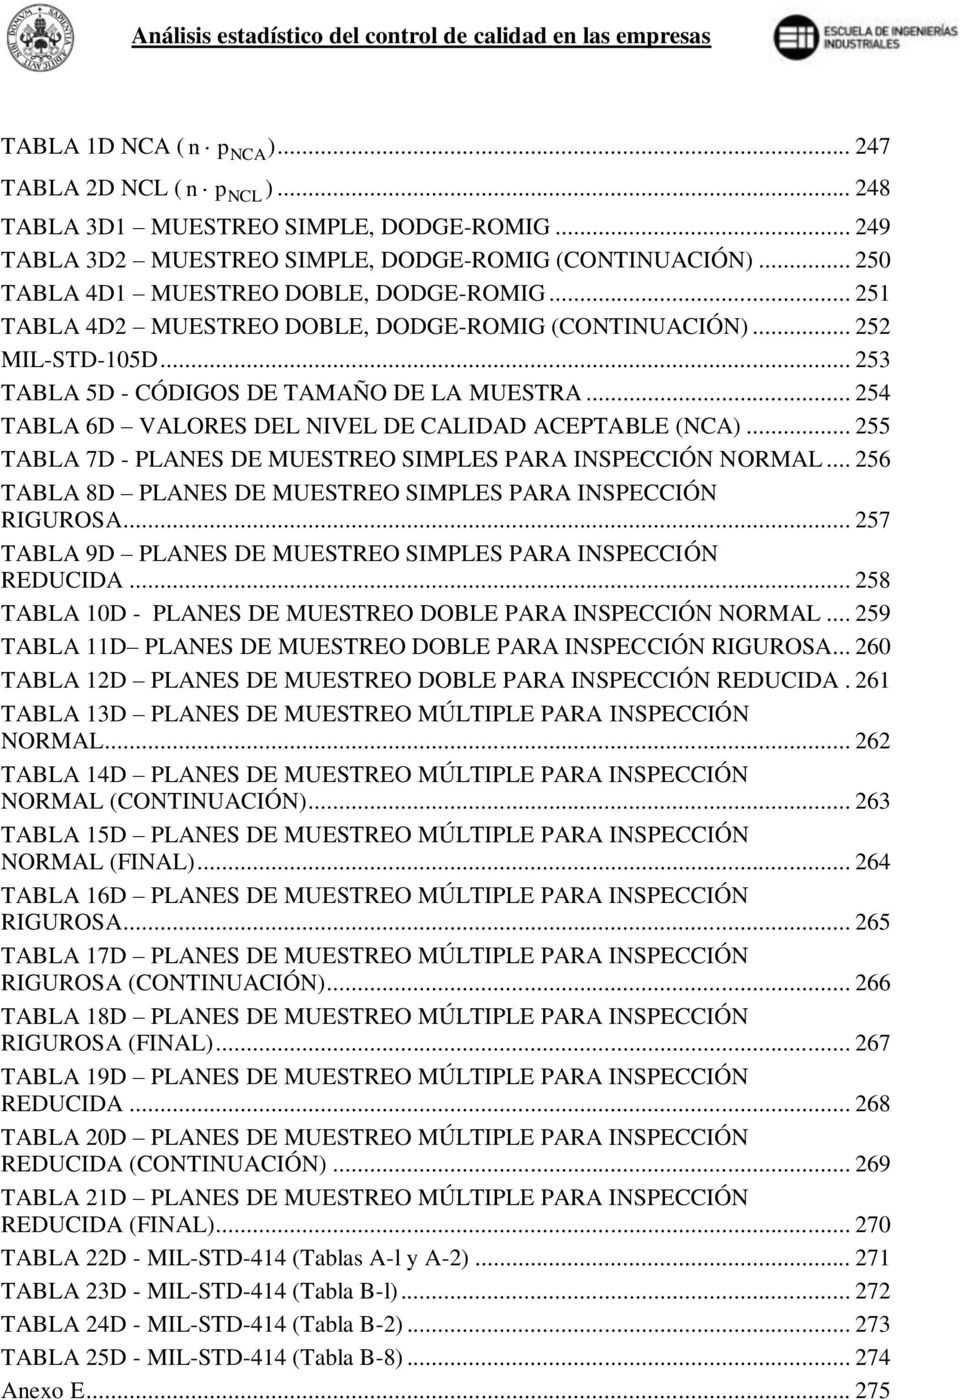 .. 54 TABLA 6D VALORE DEL NIVEL DE CALIDAD ACEPTABLE (NCA)... 55 TABLA 7D - PLANE DE MUETREO IMPLE PARA INPECCIÓN NORMAL... 56 TABLA 8D PLANE DE MUETREO IMPLE PARA INPECCIÓN RIGUROA.